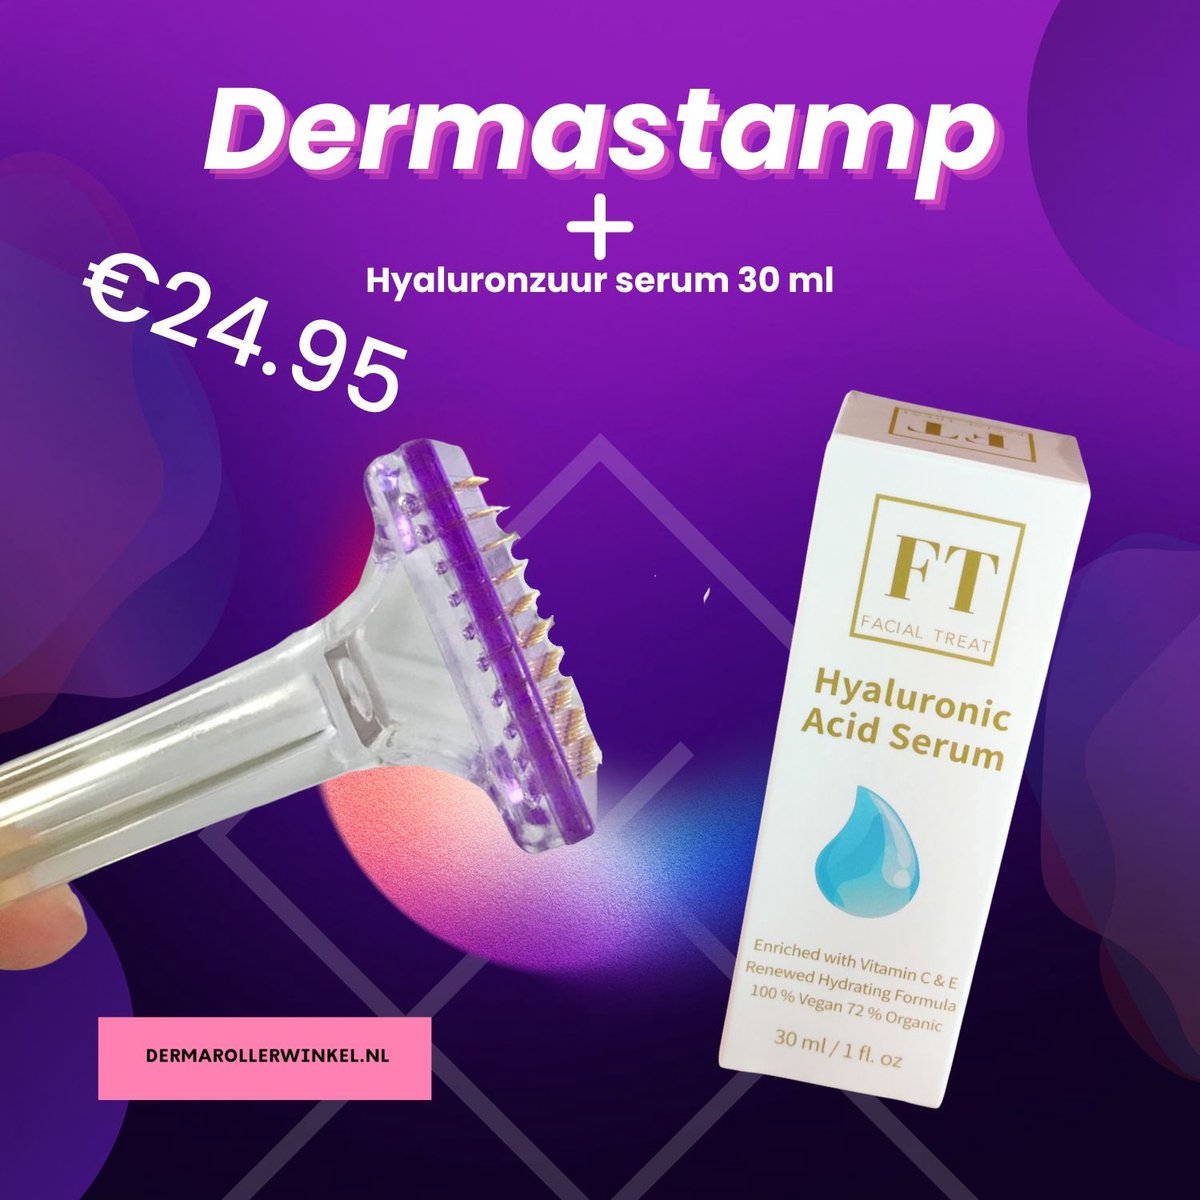 Dermastamp 1.0 mm + Hyaluronzuur Serum 30 ml